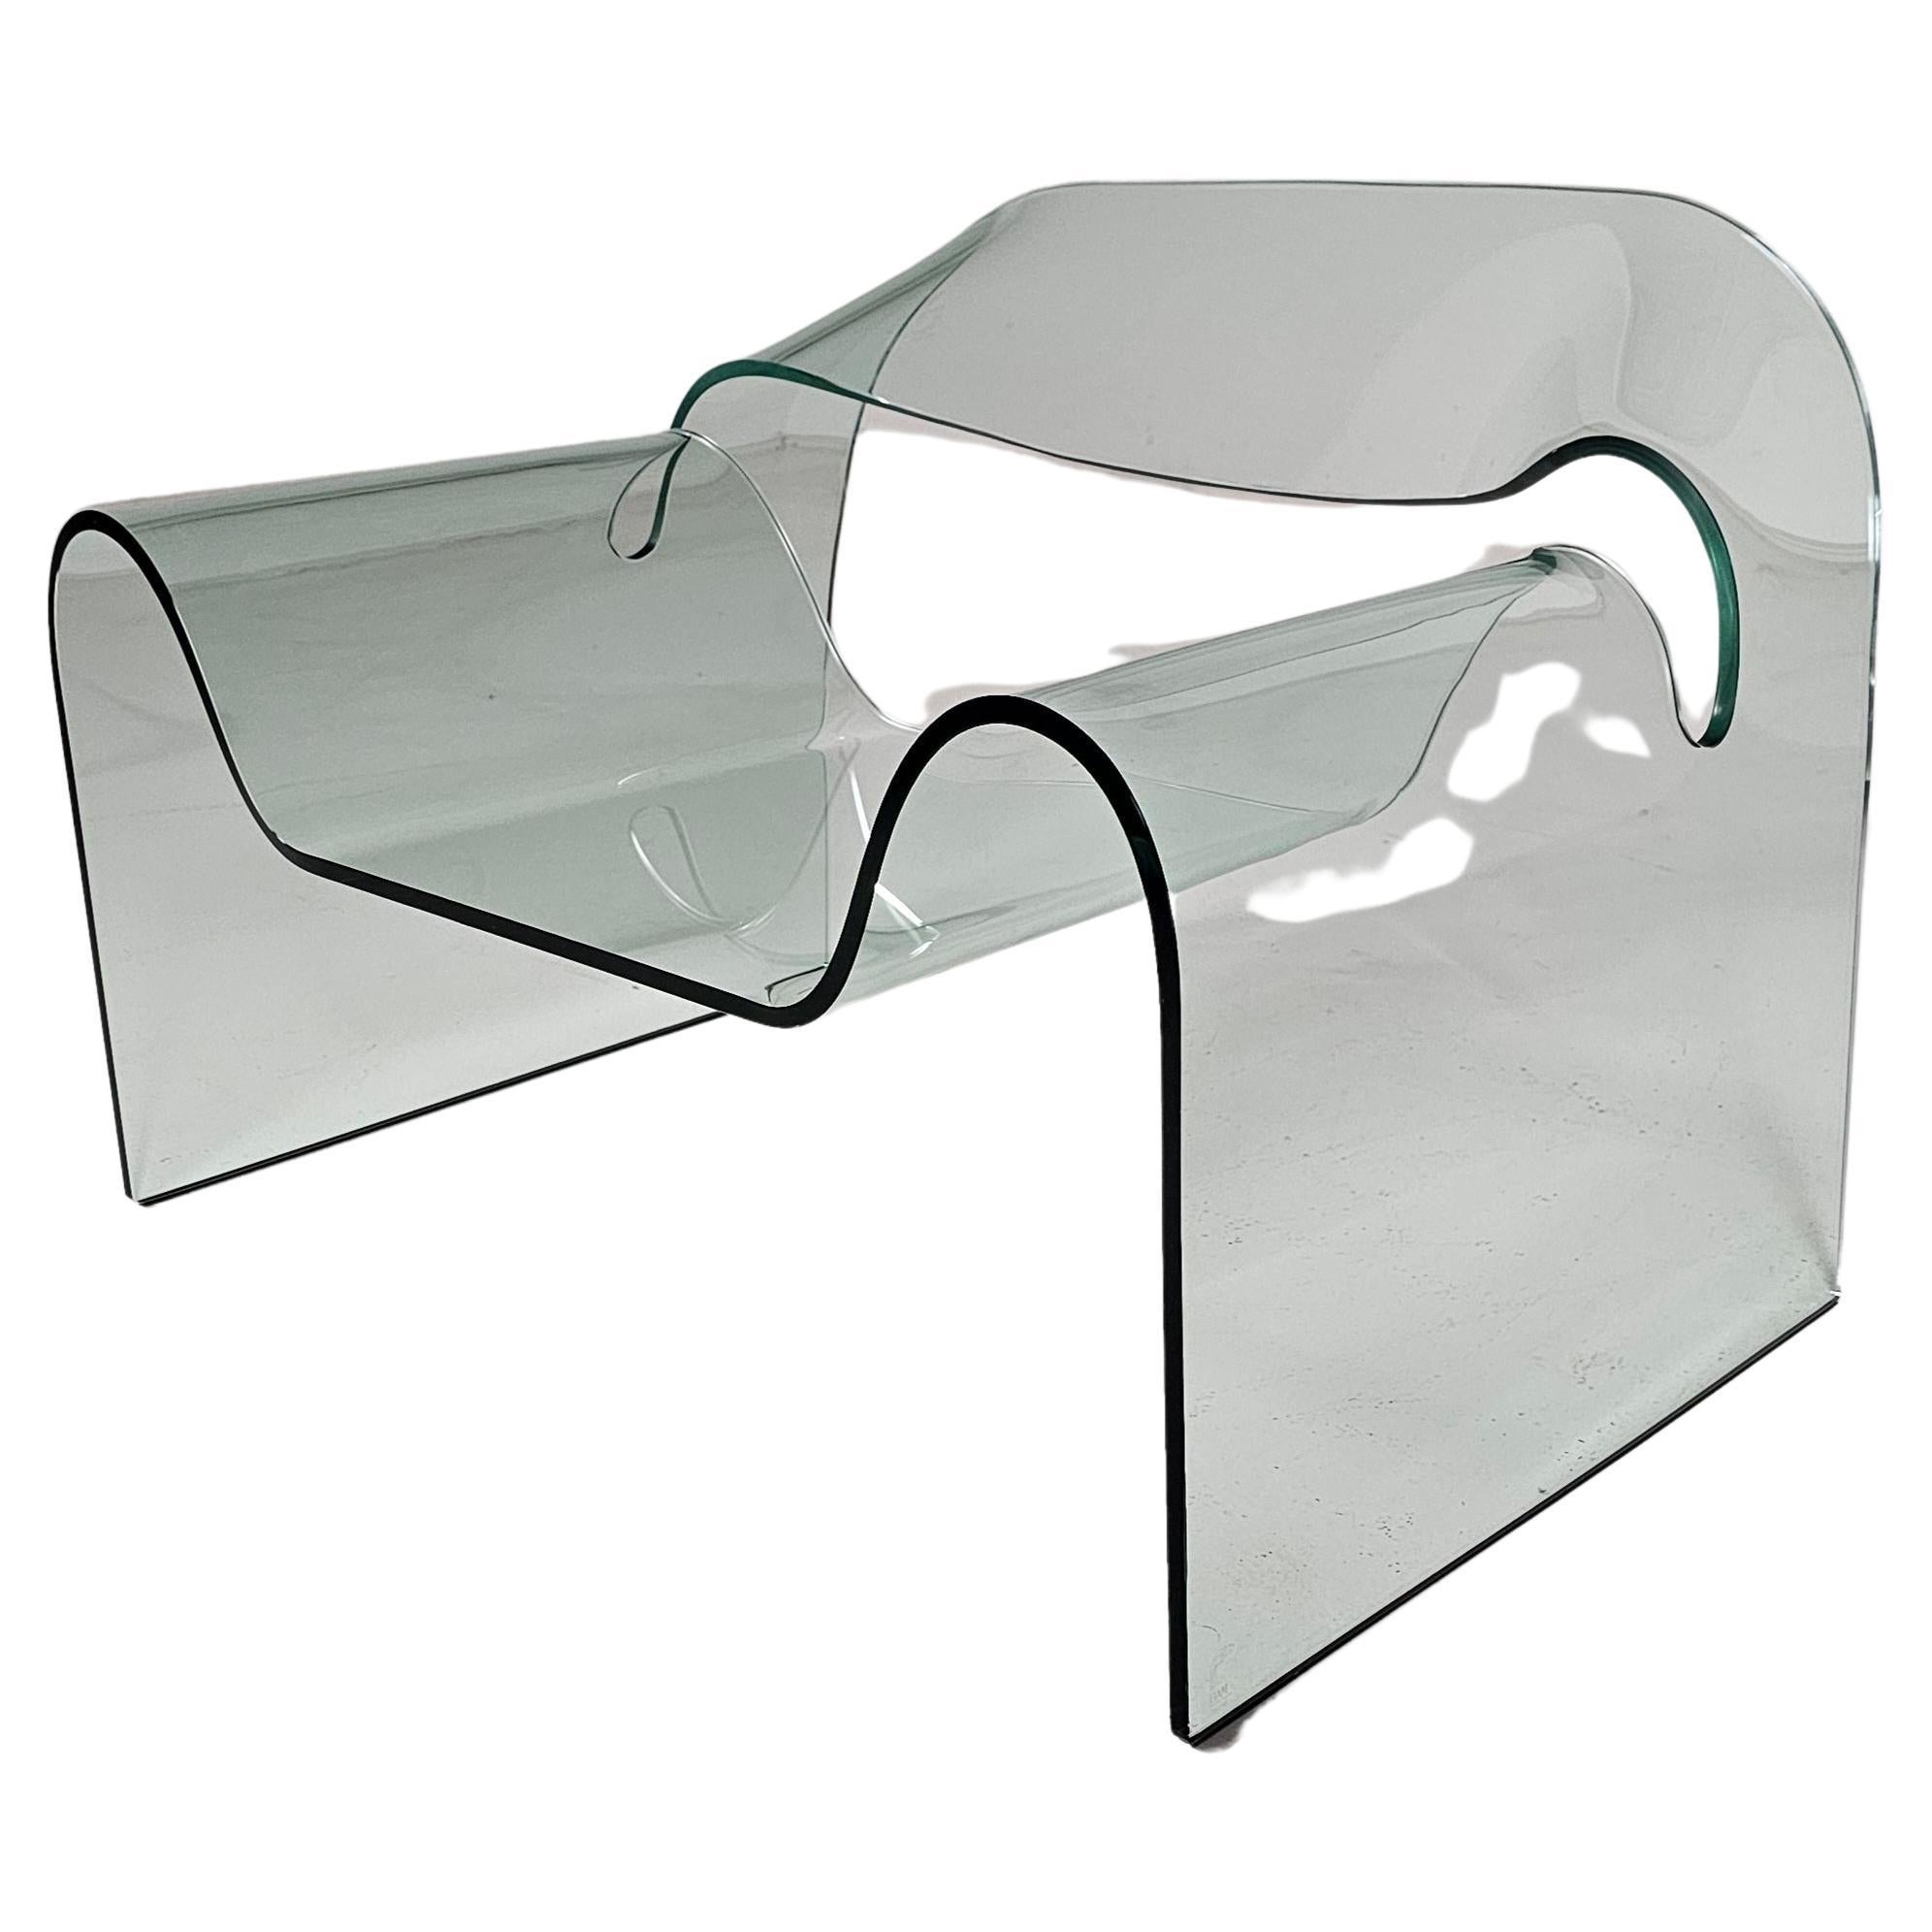 Ghost Stuhl, entworfen von Cini Boeri und Tomu Katayanagi, hergestellt von FIAM, Italien, 1980er Jahre. Dieser fantastische, transparente 12-mm-Glasstuhl ist aus dickem, gebogenem und gehärtetem Glas gefertigt und hat eine Tragfähigkeit von 150 KG.